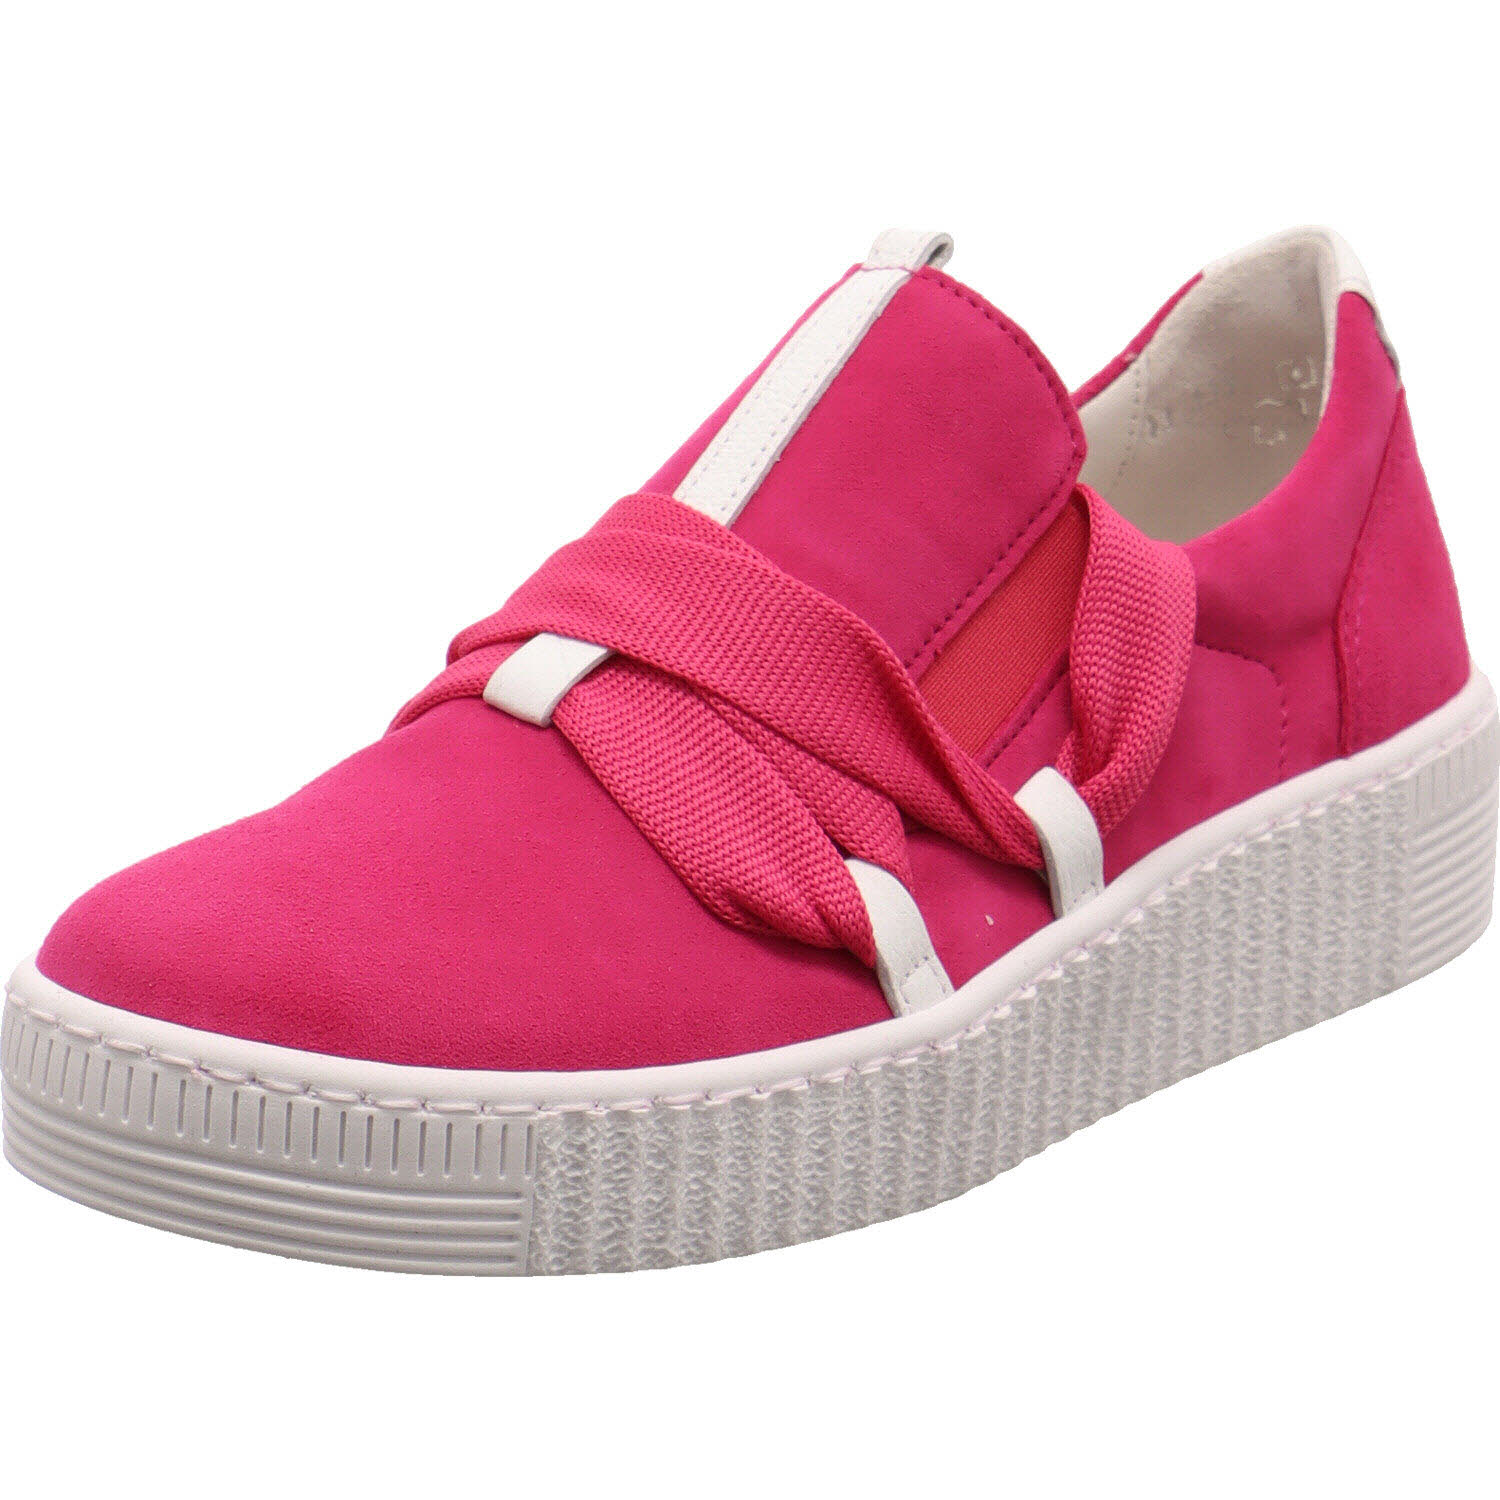 Damen Sneaker low von Gabor auch in Pink erhältlich